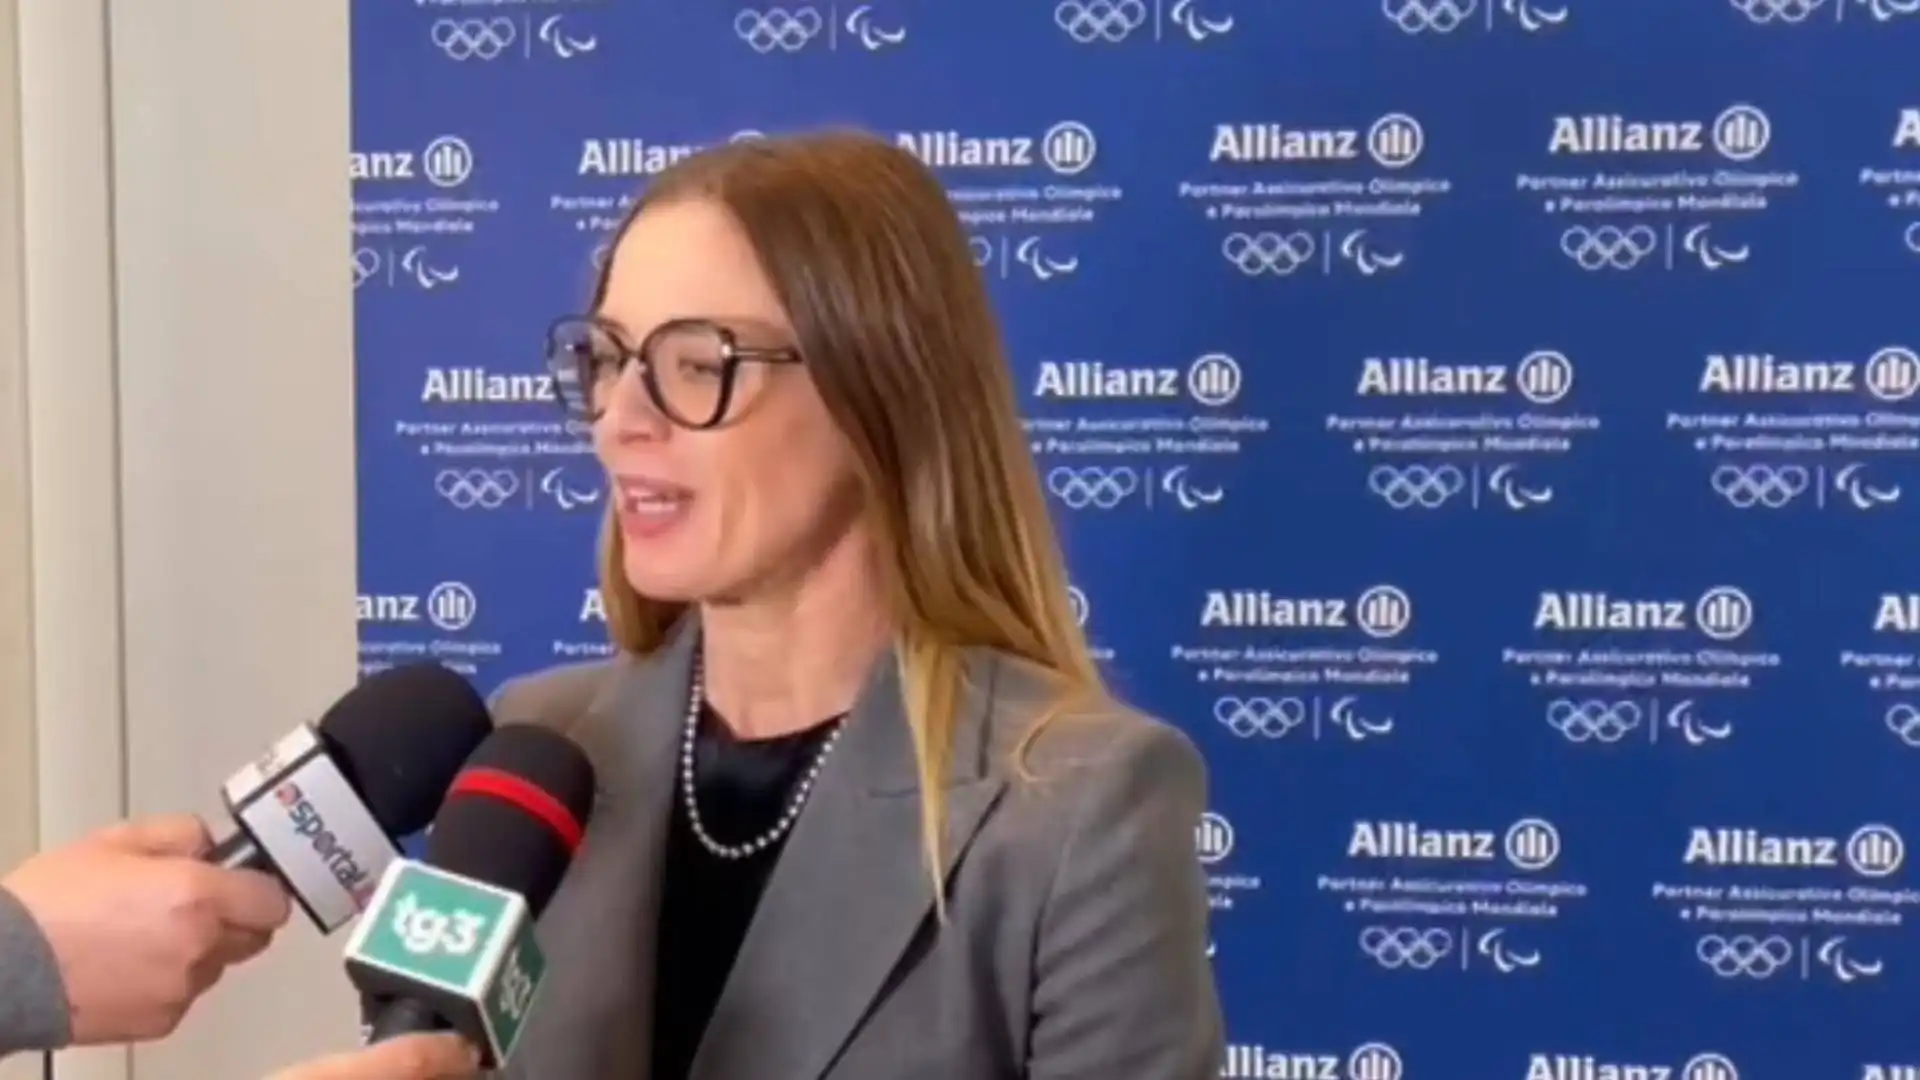 Esclusiva Sportal.it: Valentina Sestan svela l’ambizione del progetto Allianz “Sognando Parigi 2024: 7 atleti, un solo traguardo”